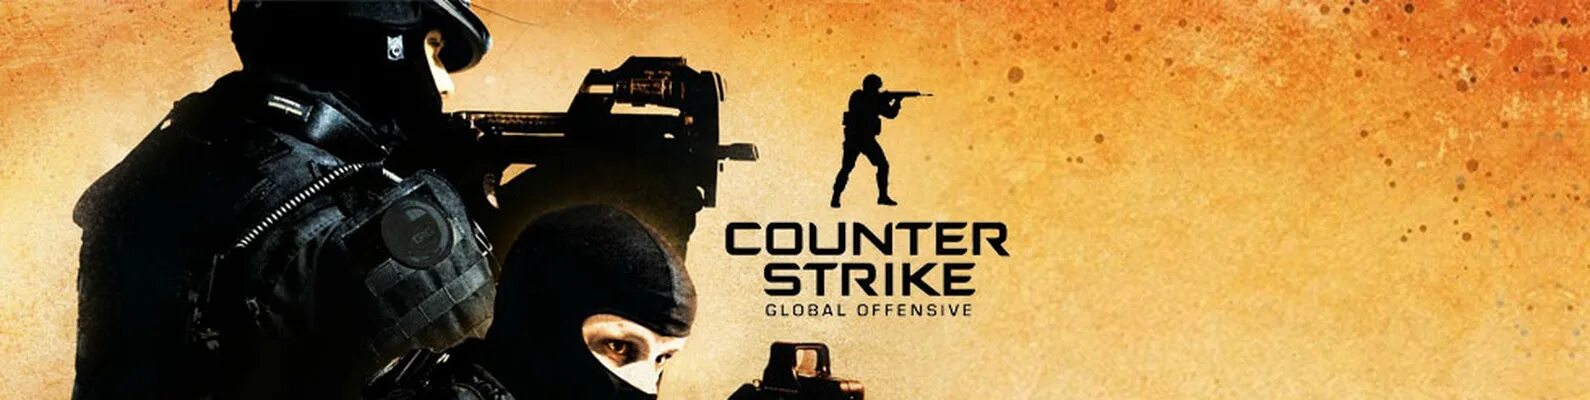 Counter Strike go обложка. Counter-Strike: Global Offensive обложка. CS go обложка игры. Плакат КС го. Обложка кс